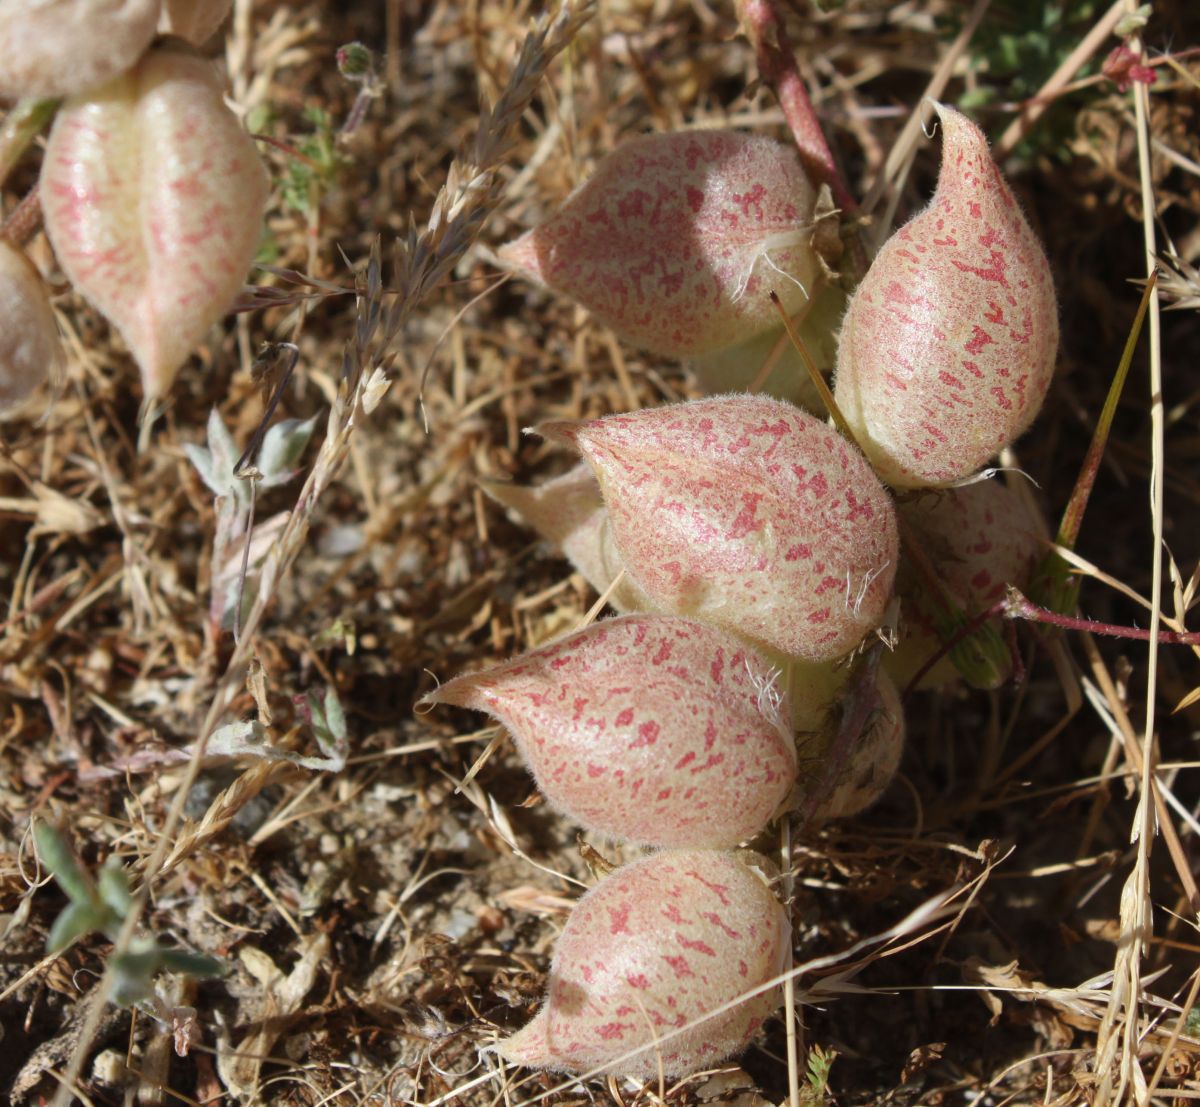 Astragalus lentiginosus var. nigricalycis